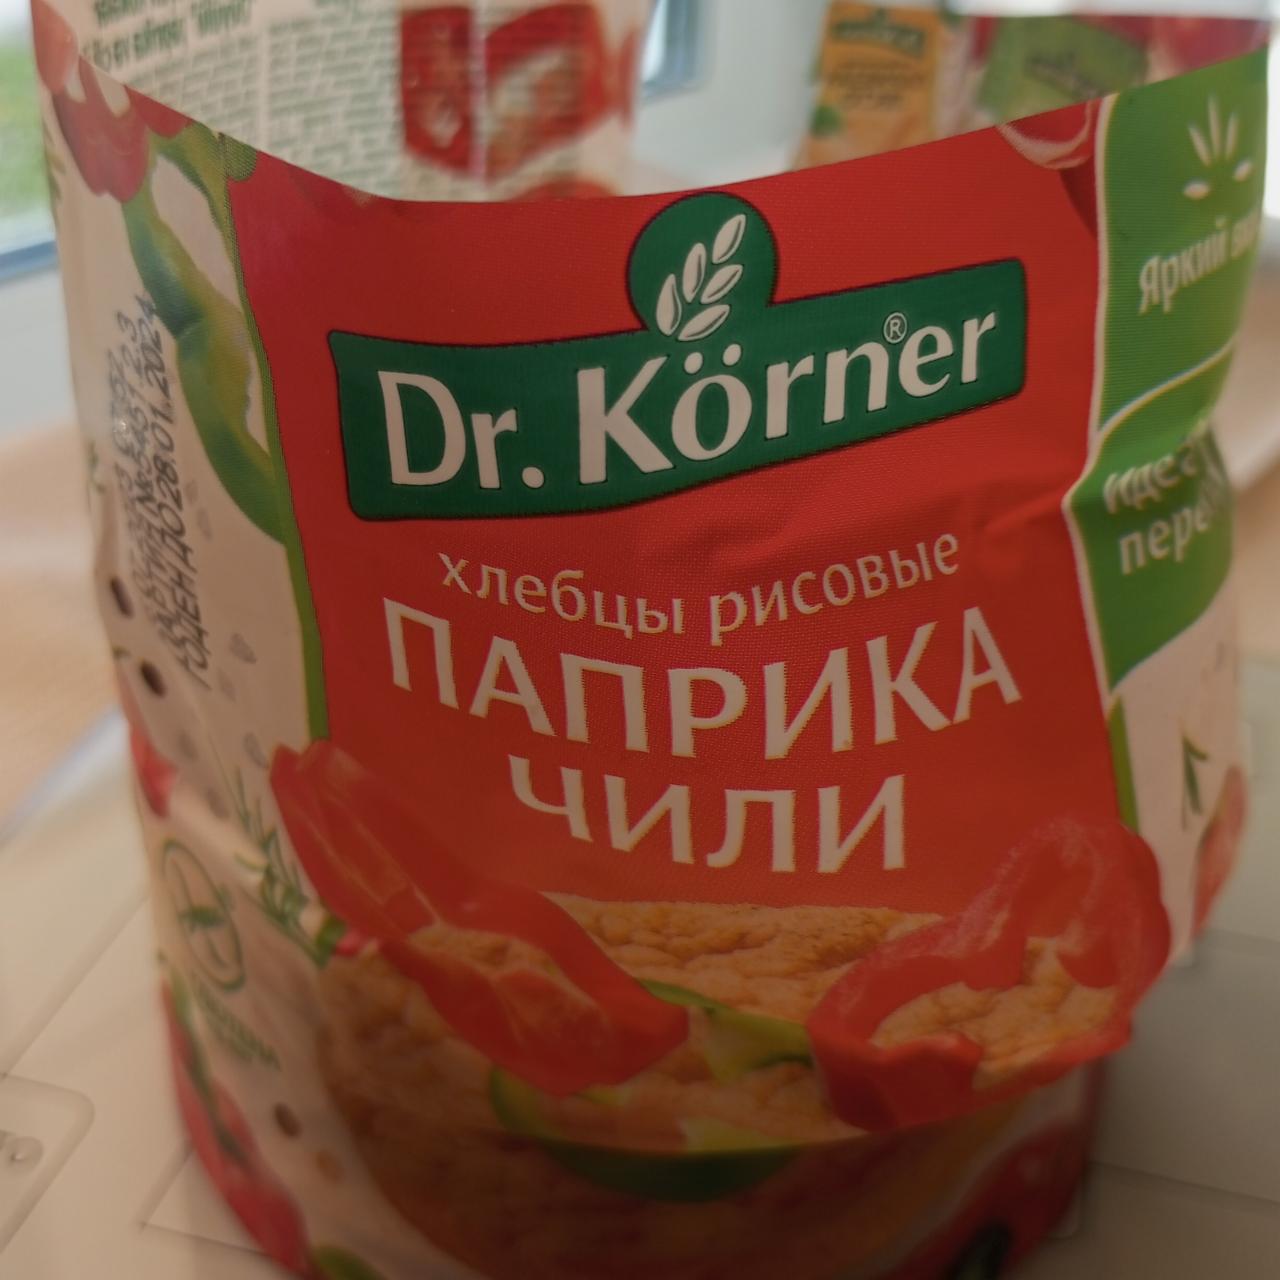 Фото - хлебцы рисовые паприка чили Dr.Korne